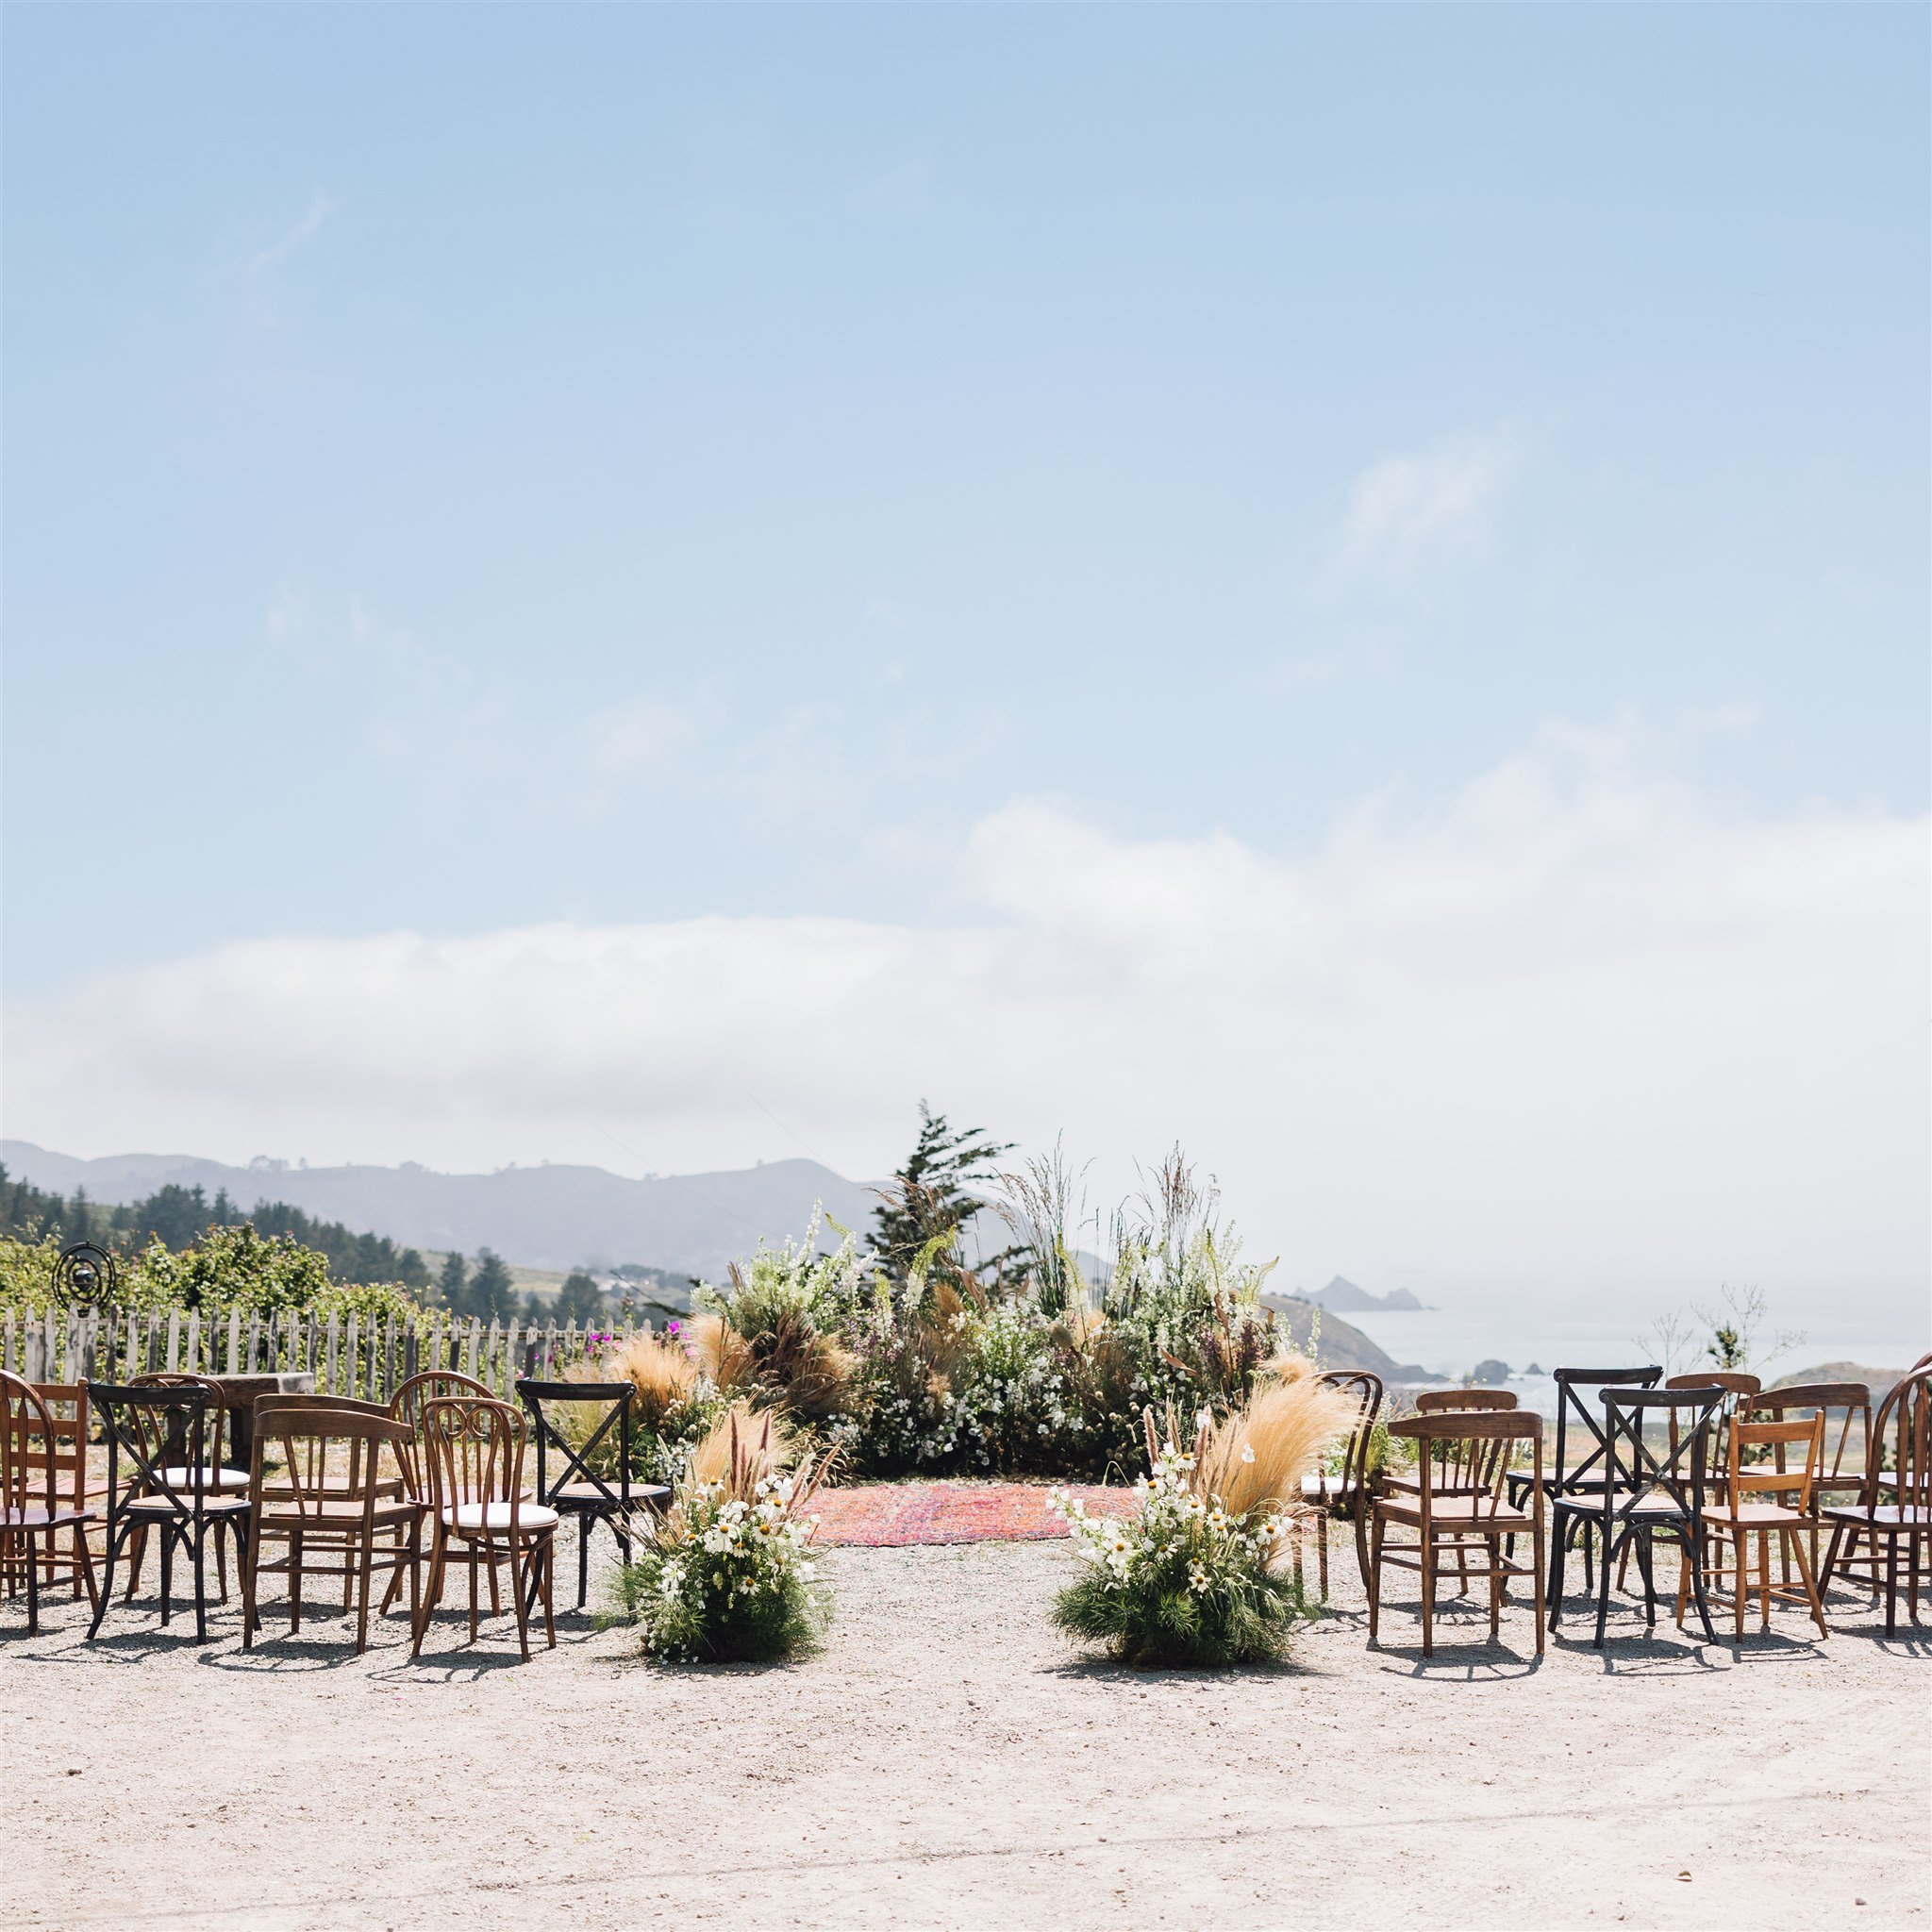 Pacifica-wedding-shelldance-gardens-gillian-clark-ashley-carlascio-photography-0058.jpg